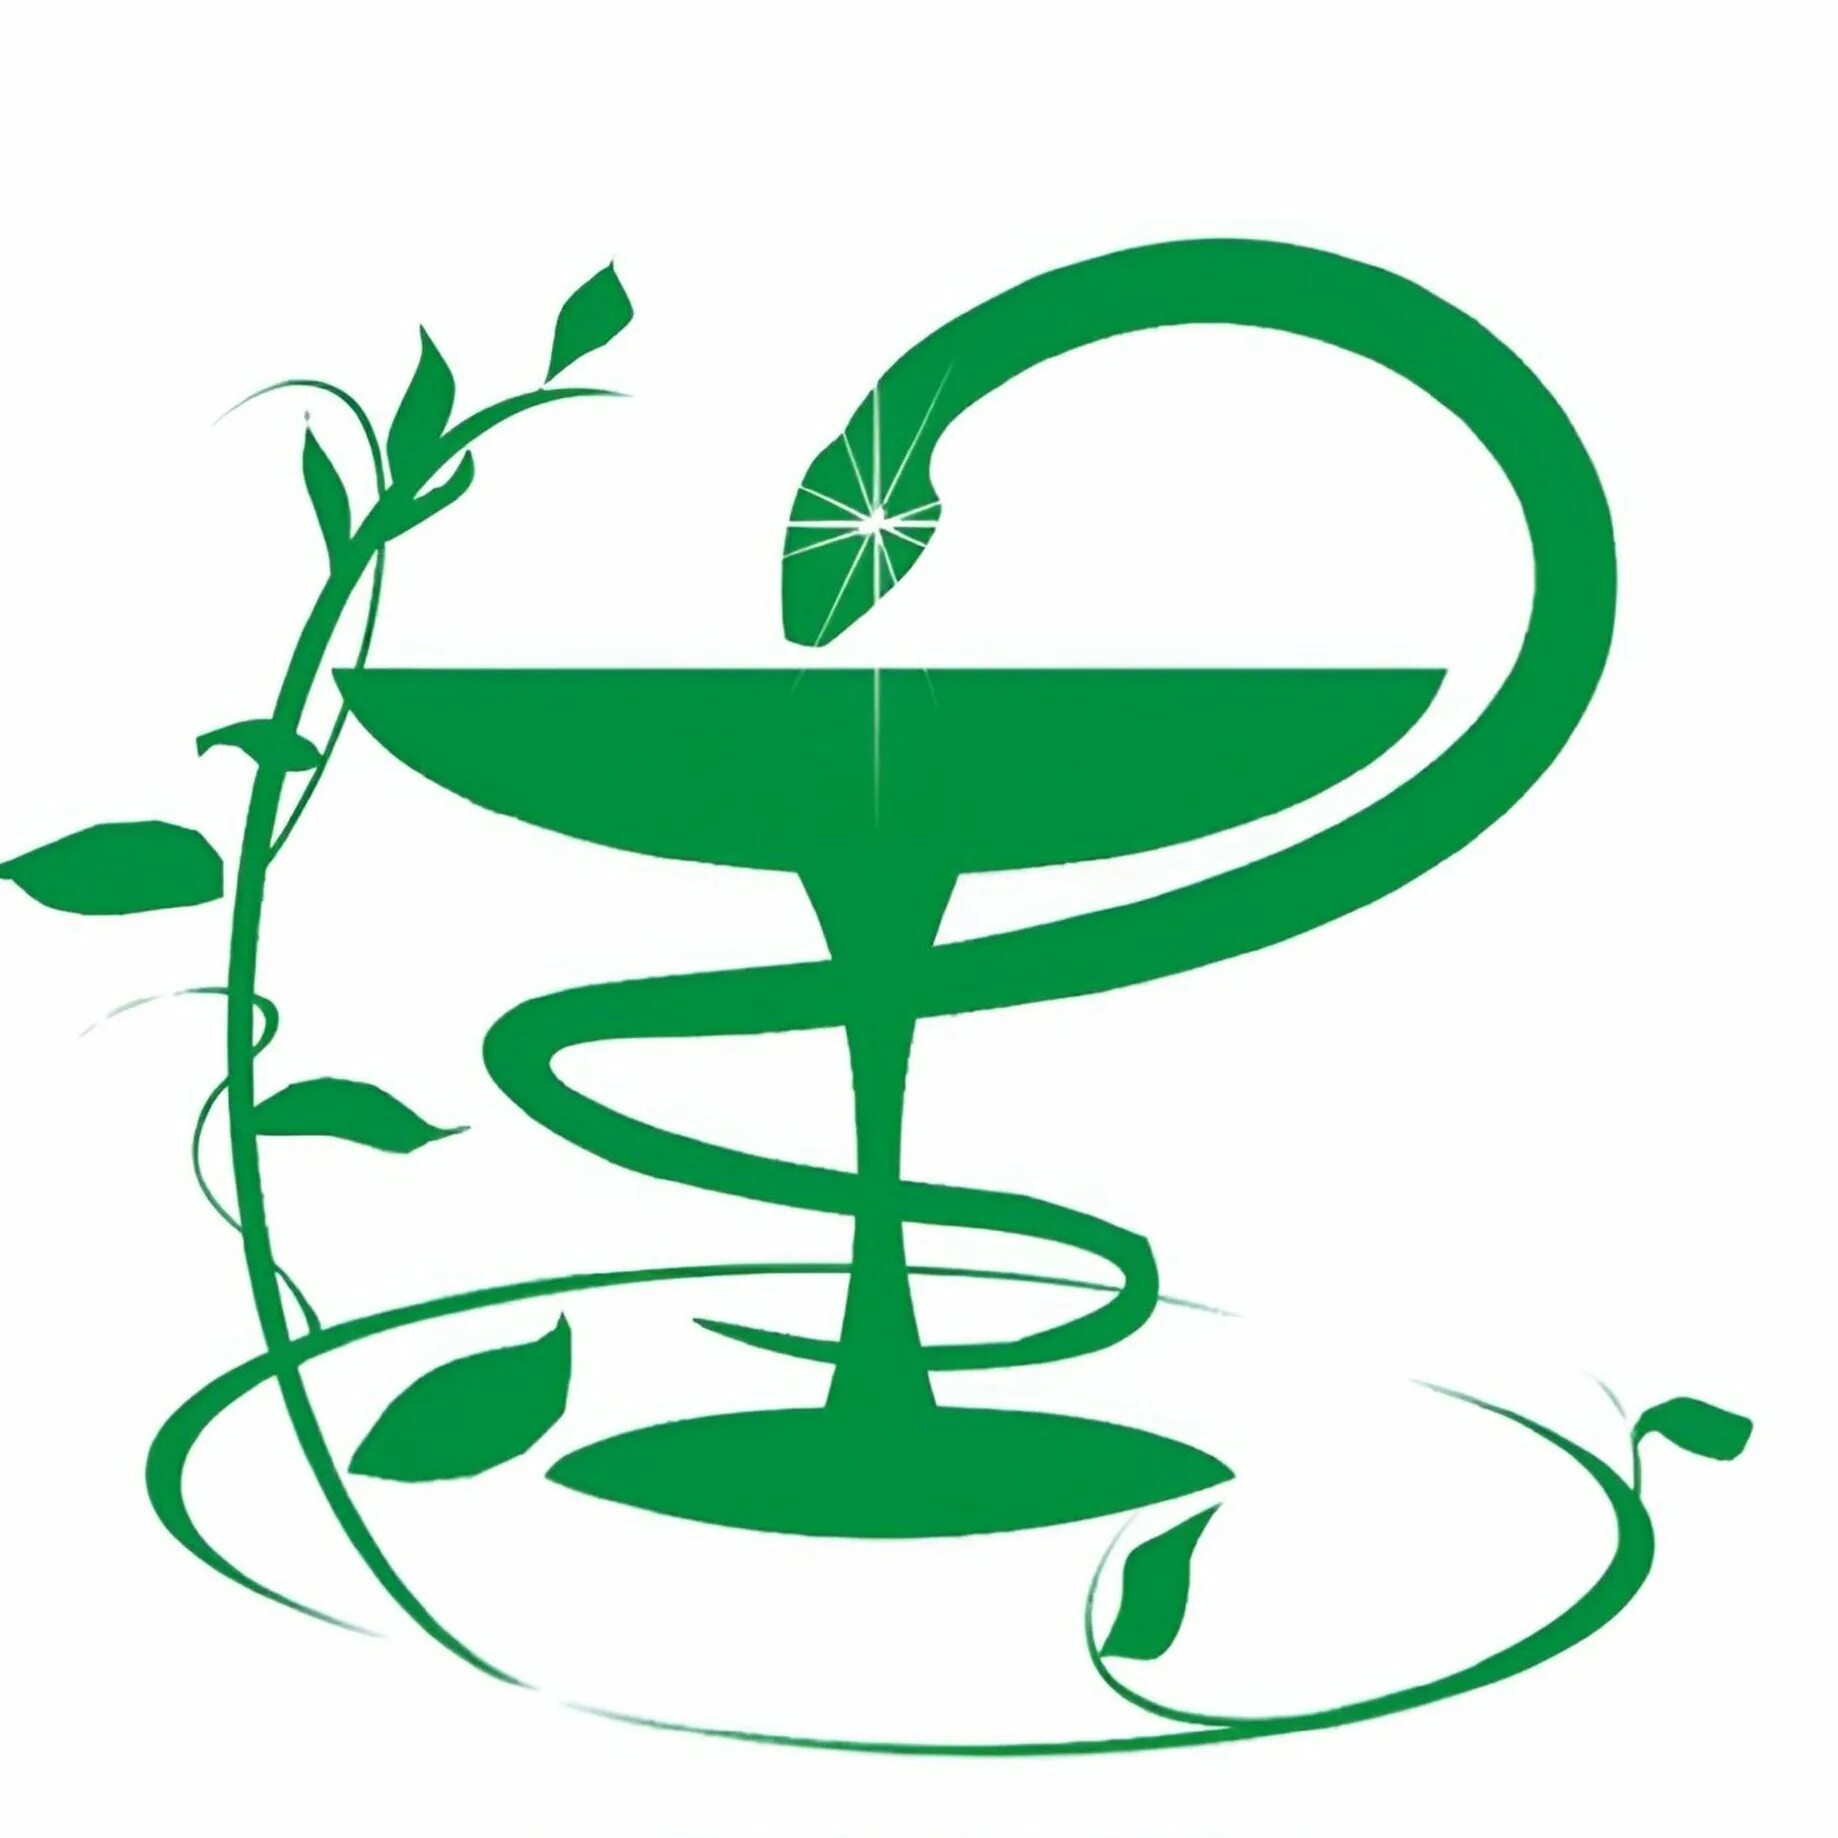 Медицинская эмблема. Логотип медицины. Чаша со змеей эмблема медицины. Аптека символ.